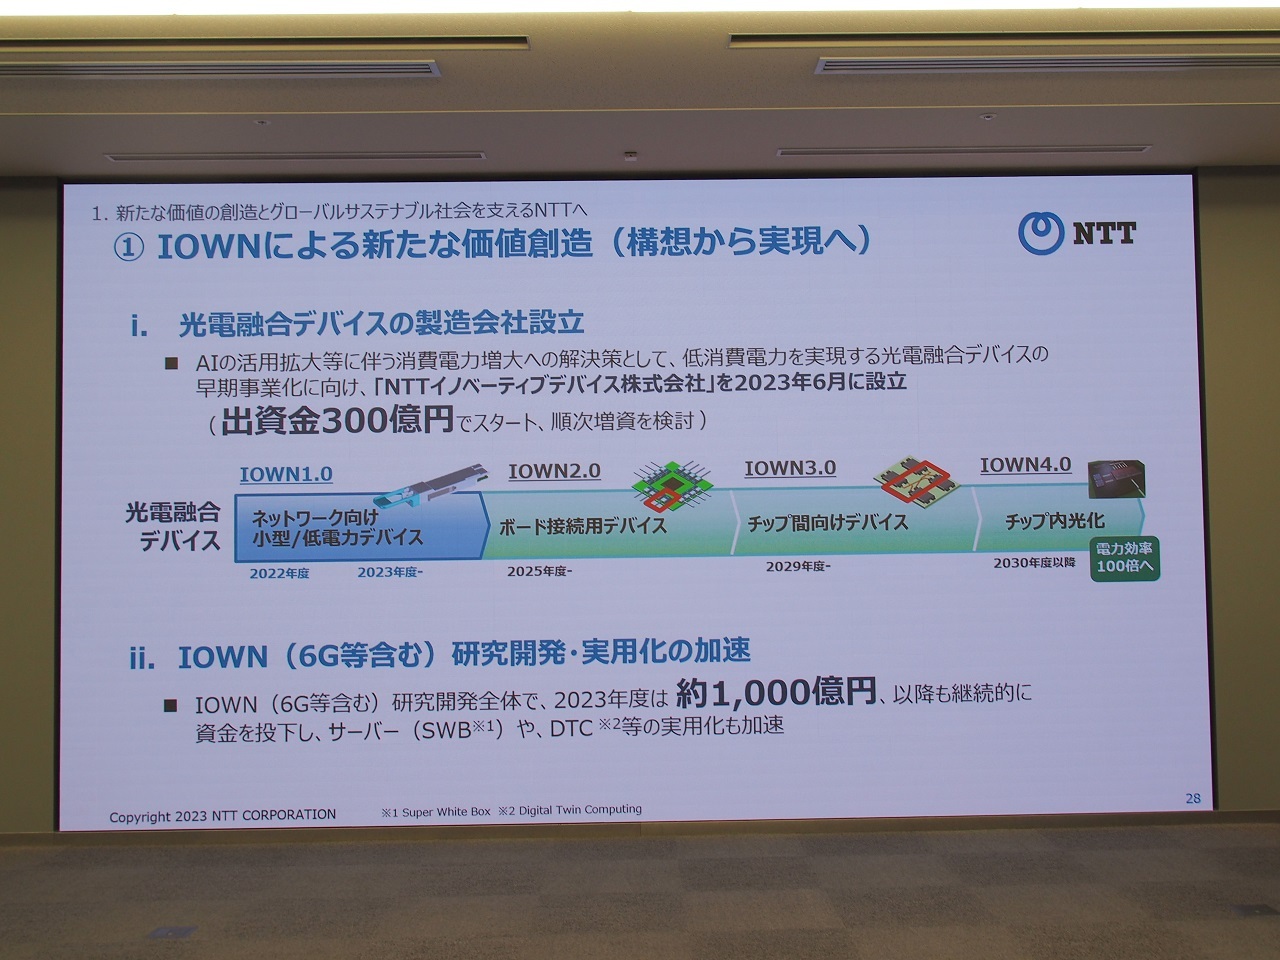 NTTグループはIOWNの進化に向けた取り組みを積極化しており、新たに光電融合デバイスの製造を担う「NTTイノベーティブデバイス」の設立を明らかにしている